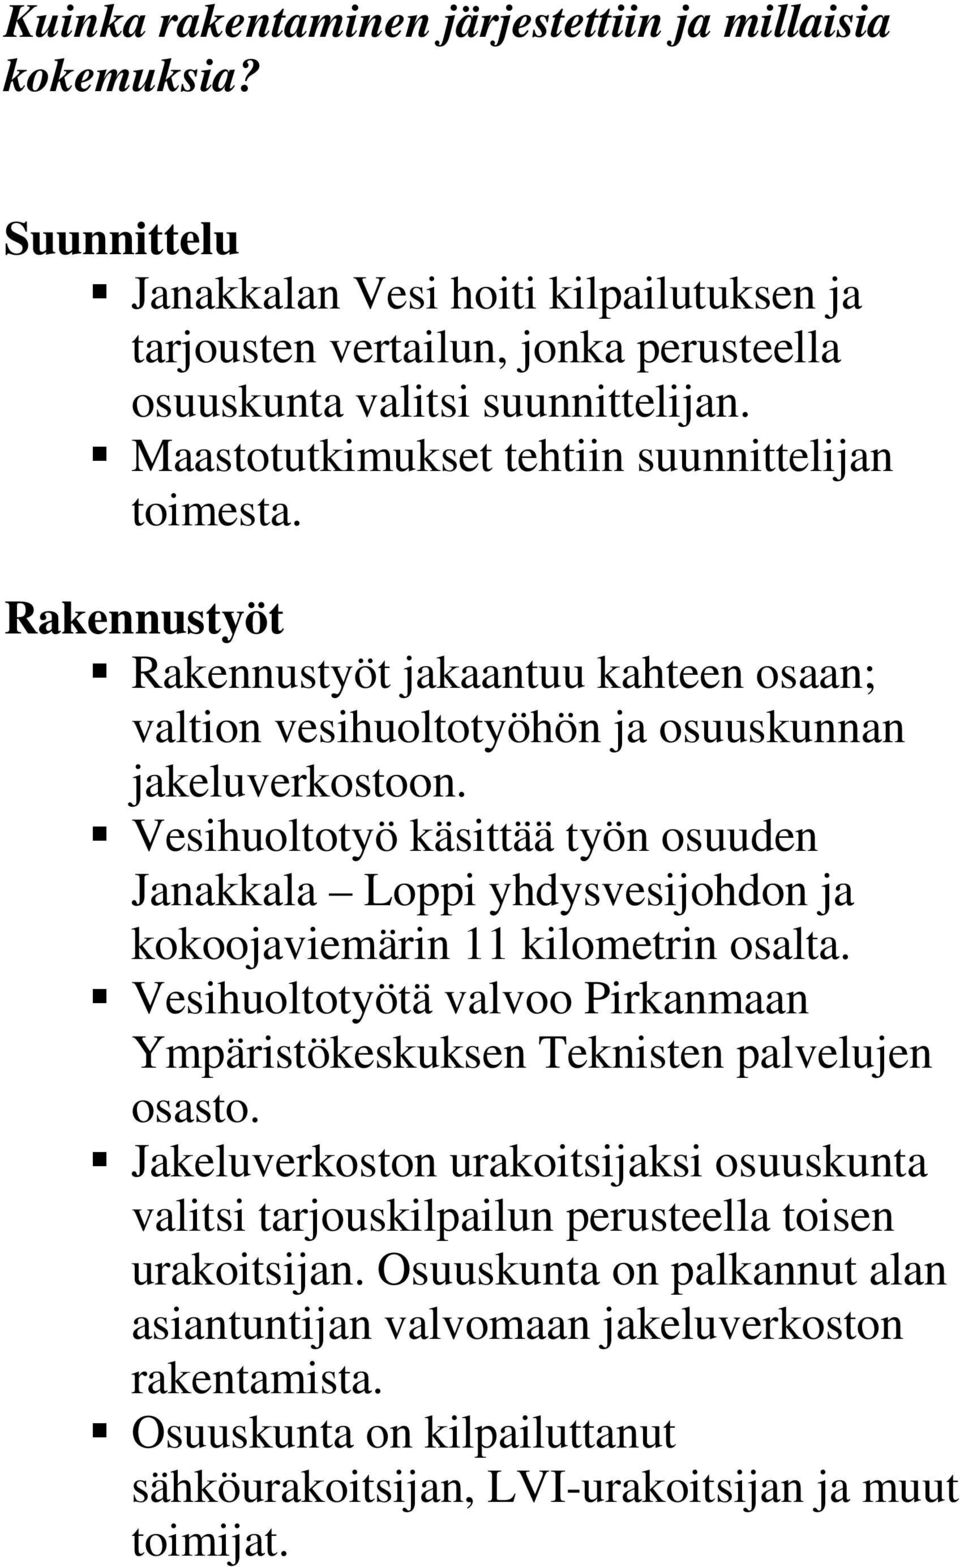 Vesihuoltotyö käsittää työn osuuden Janakkala Loppi yhdysvesijohdon ja kokoojaviemärin 11 kilometrin osalta. Vesihuoltotyötä valvoo Pirkanmaan Ympäristökeskuksen Teknisten palvelujen osasto.